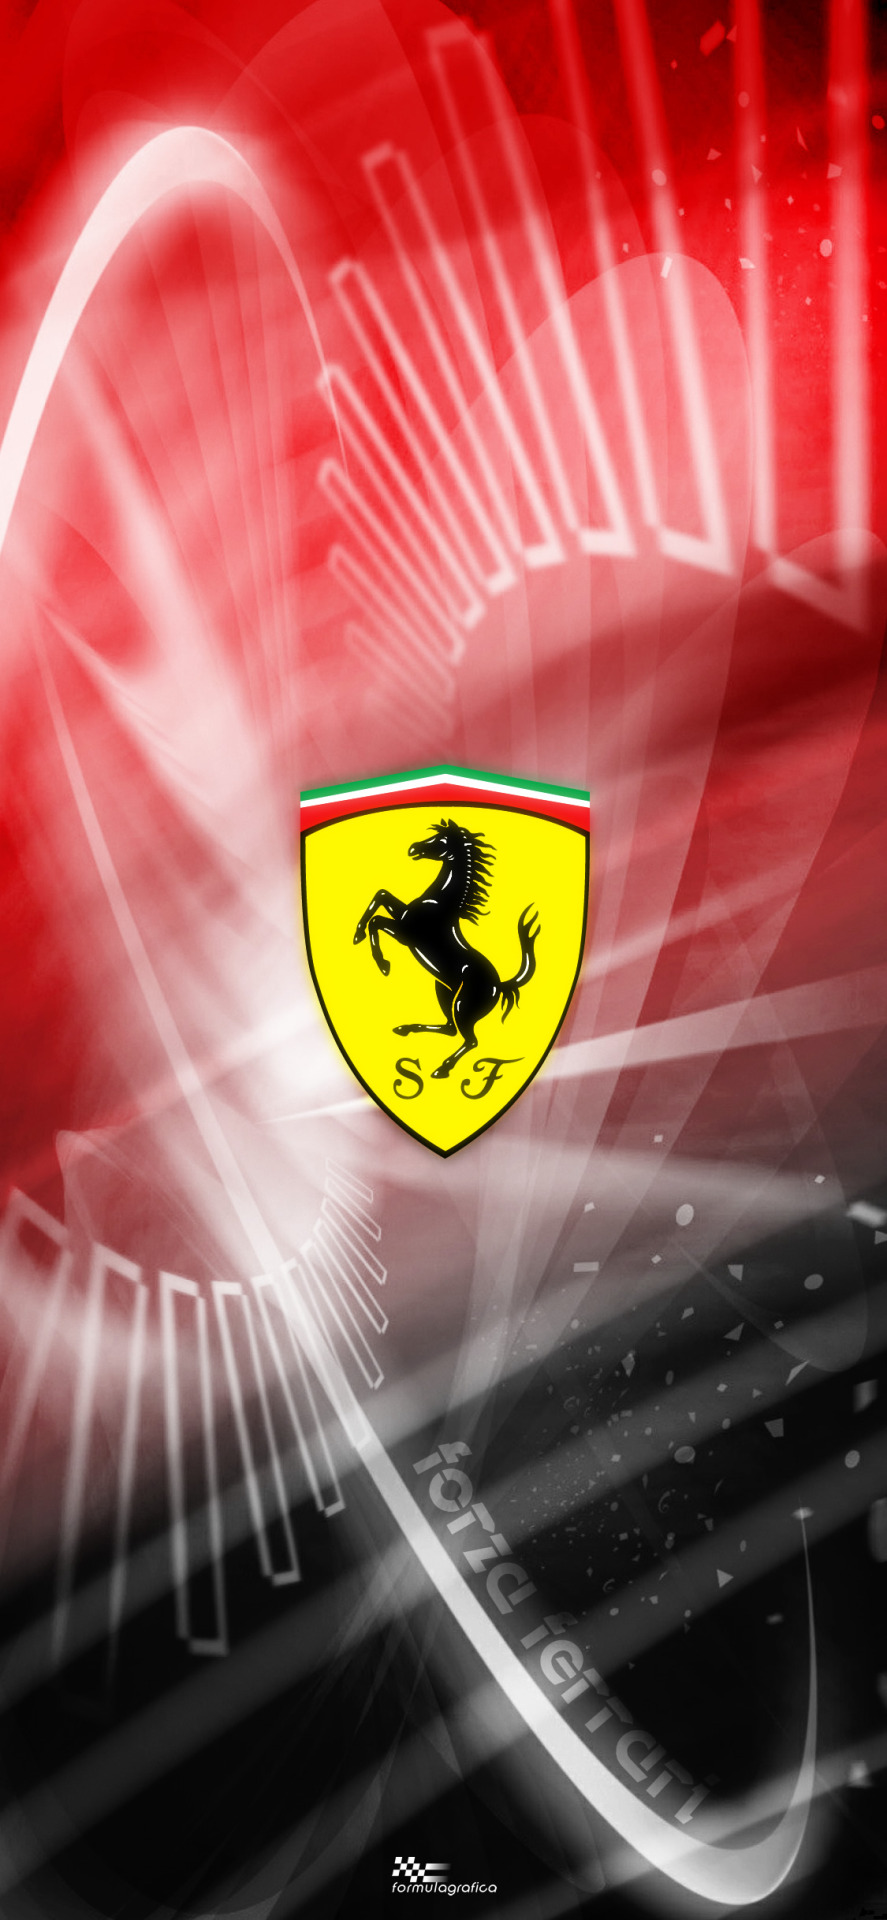 Ferrari F1 Logo Wallpapers - Wallpaper Cave